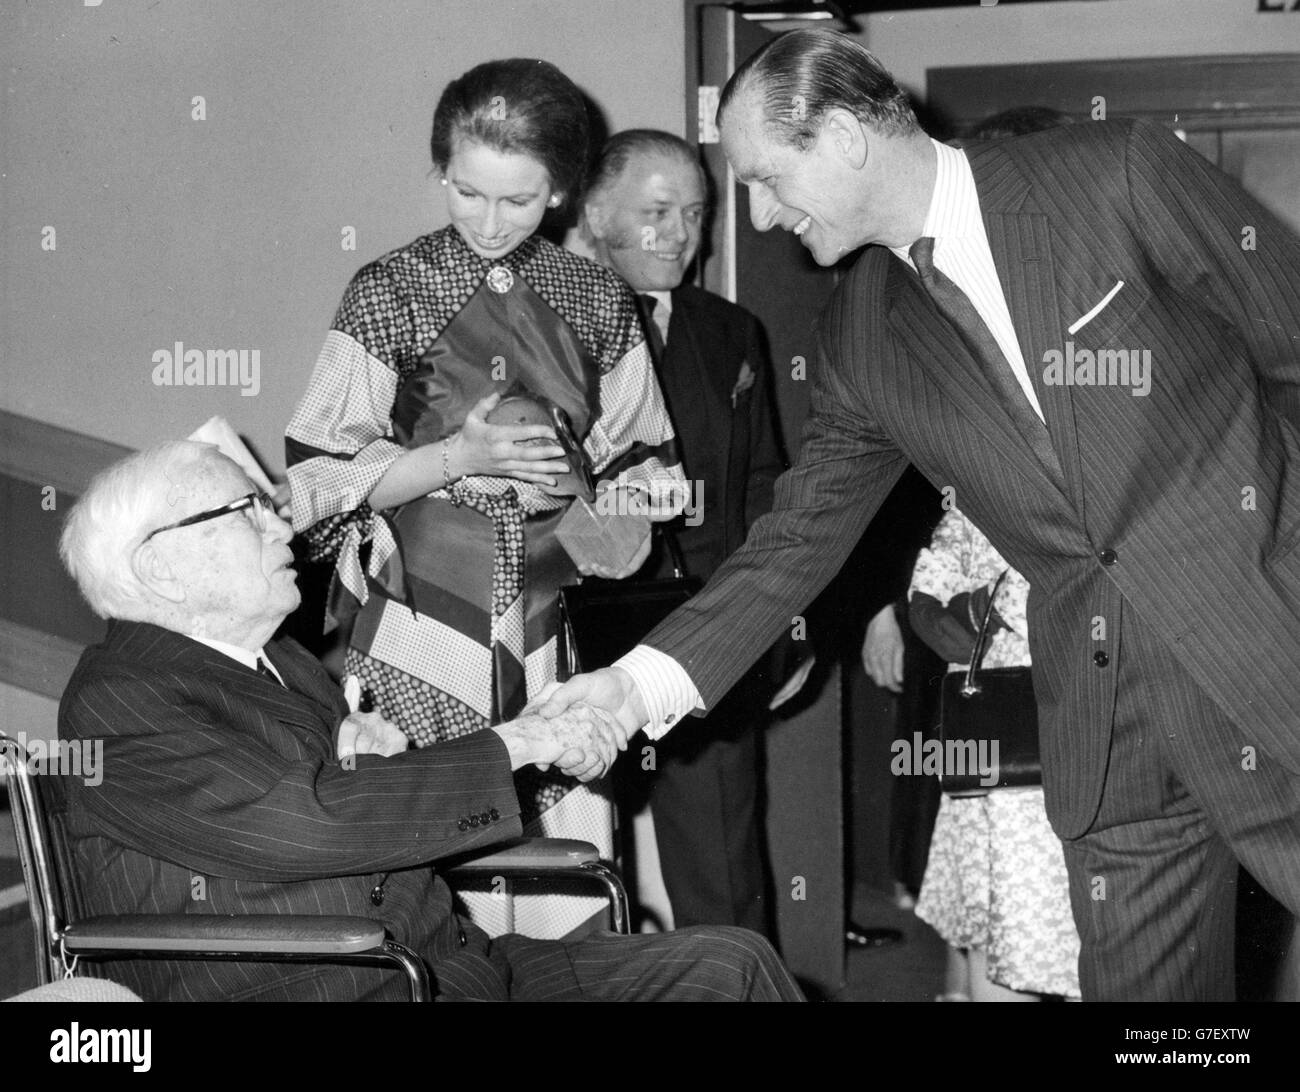 Der Herzog von Edinburgh schüttelt die Hand von Sir Charles Chaplin, während die Königin aufschaut. Sie eröffnete offiziell das International Centre, das neue Hauptquartier der British Academy of Film and Television in Piccadilly, London. *Eingescannte Low-Res aus dem Druck, High-Res auf Anfrage* Stockfoto